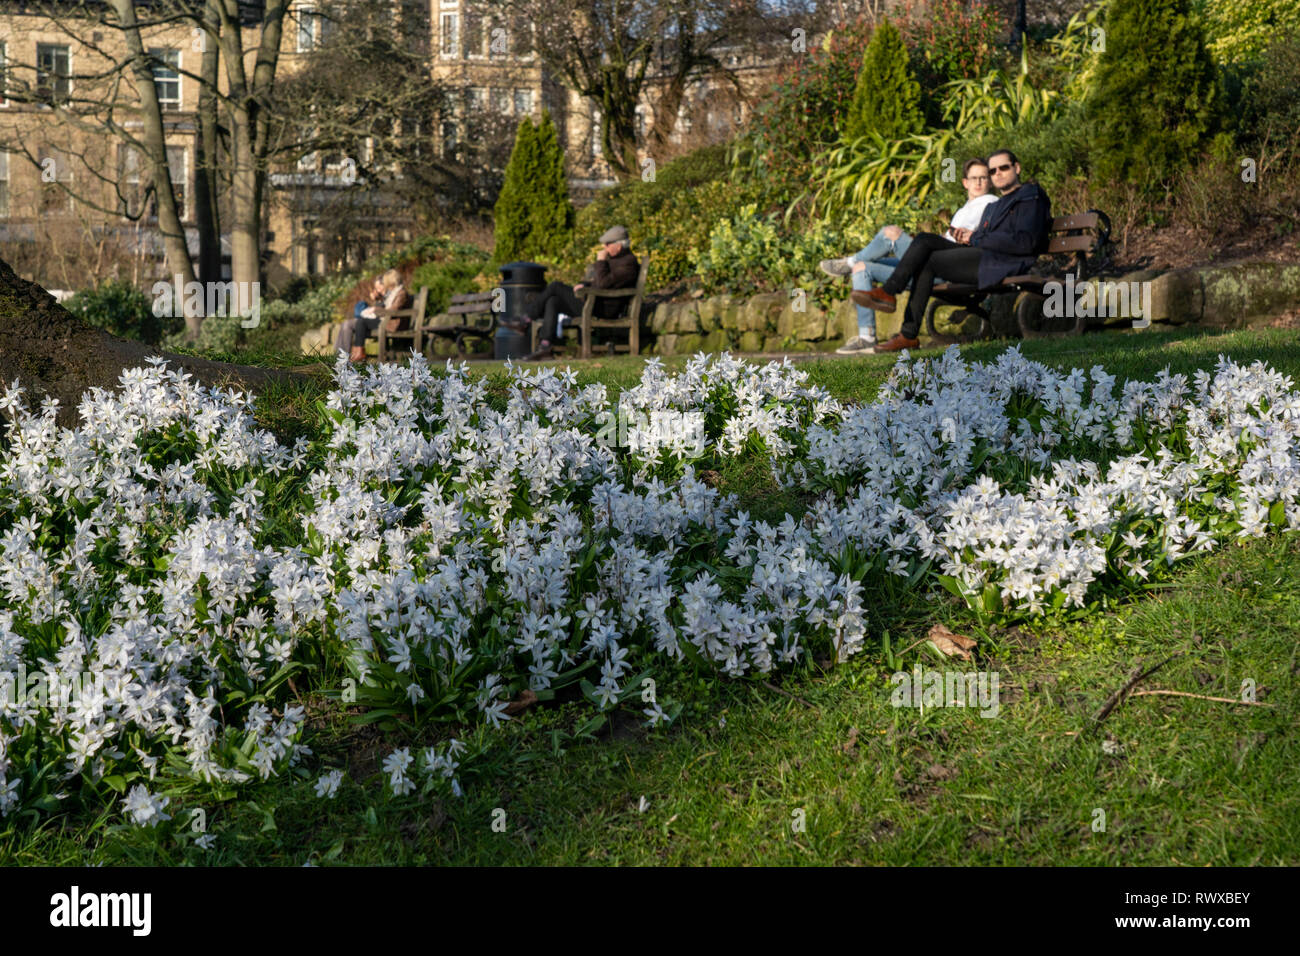 Une banque herbeuse dans un jardin public avec des grappes de petites fleurs blanches de printemps avec des touristes assis sur des bancs en bois, Harrogate, North Yorkshire. Banque D'Images